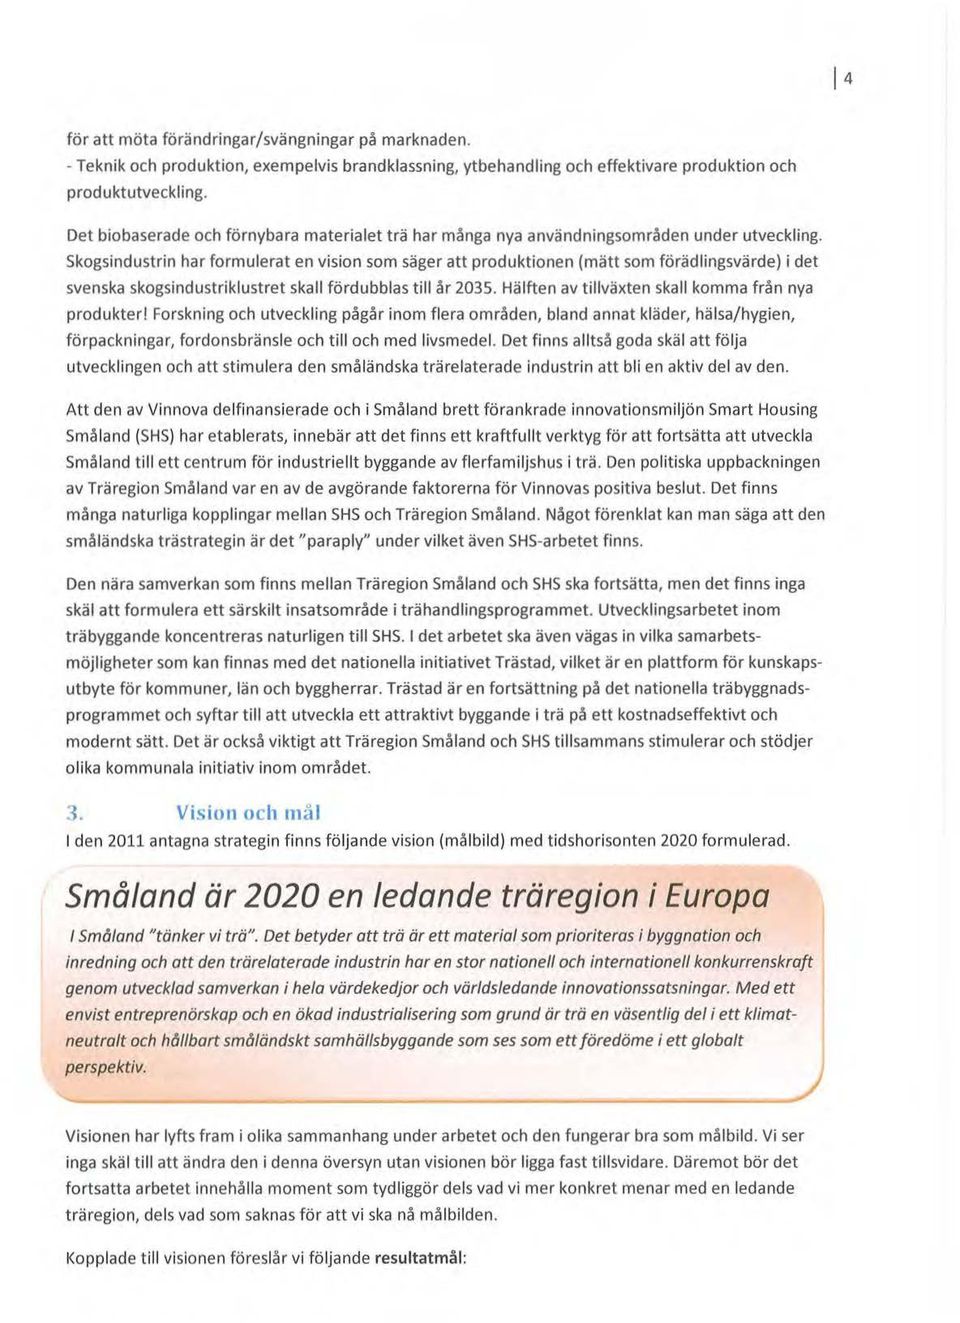 skgsindustrin har frmulerat en visin sm säger att prduktinen (mätt sm förädlingsvärde) i det svenska skgsindustriklustret skall fördubblas till år 2035.